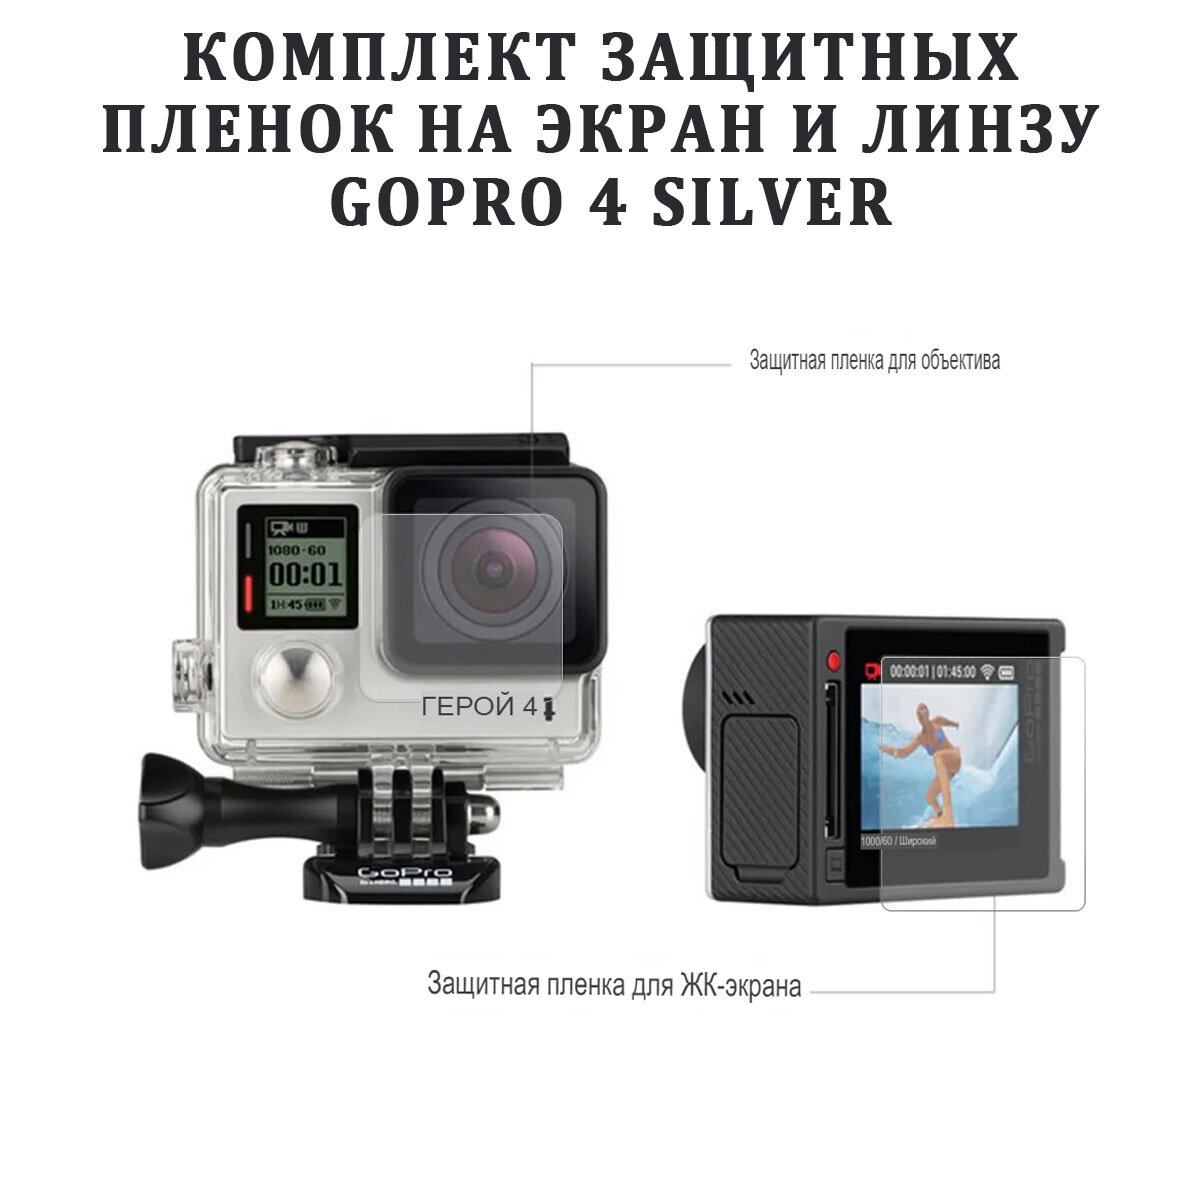 Комплект защитных пленок на экран и линзу GoPro 4 Silver